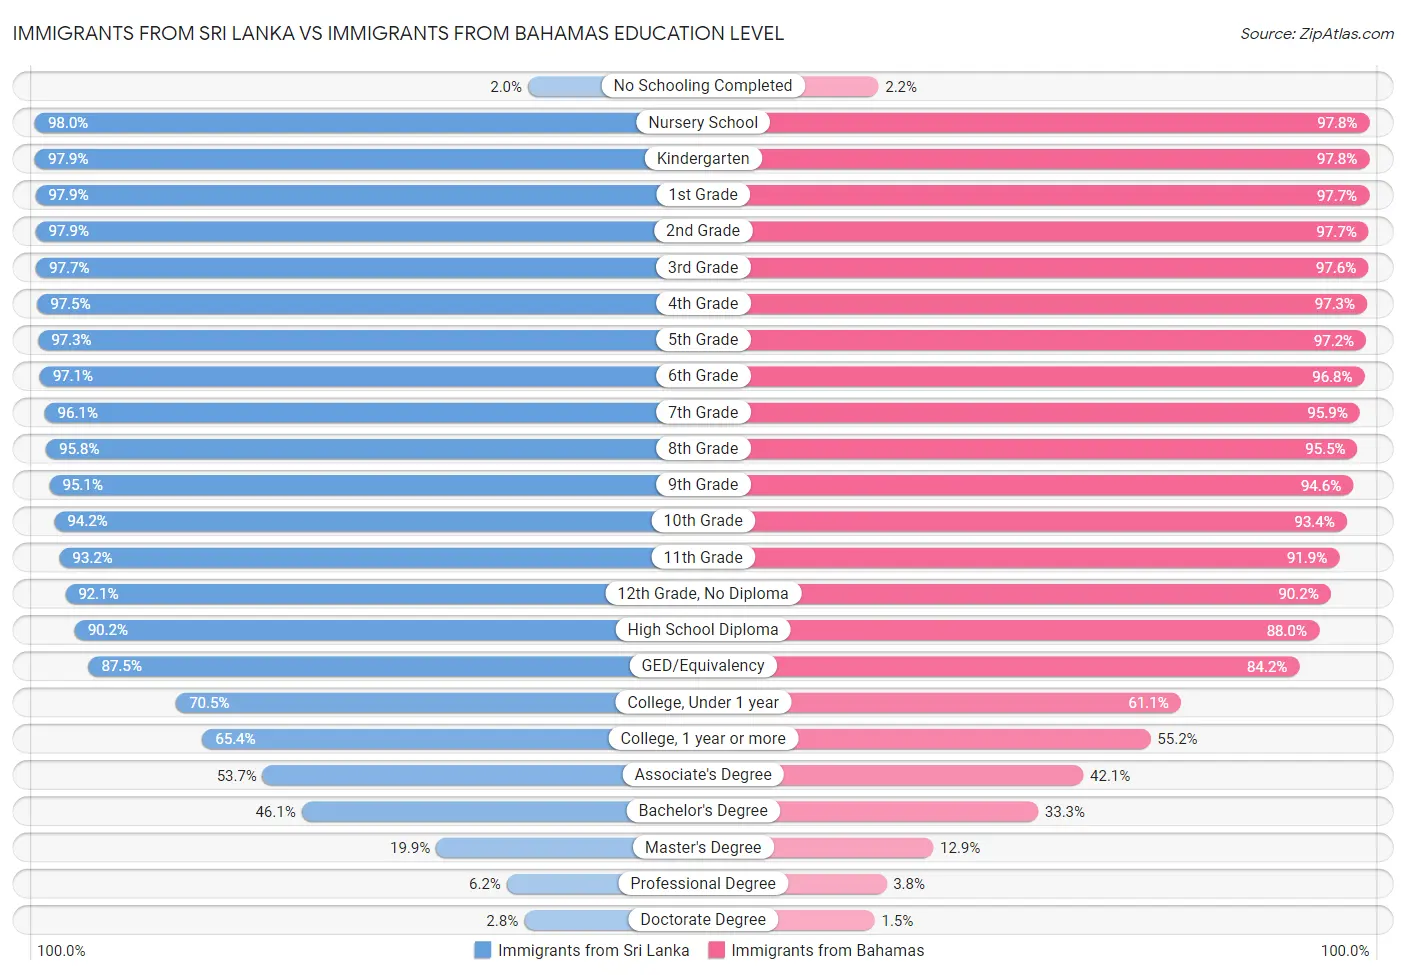 Immigrants from Sri Lanka vs Immigrants from Bahamas Education Level